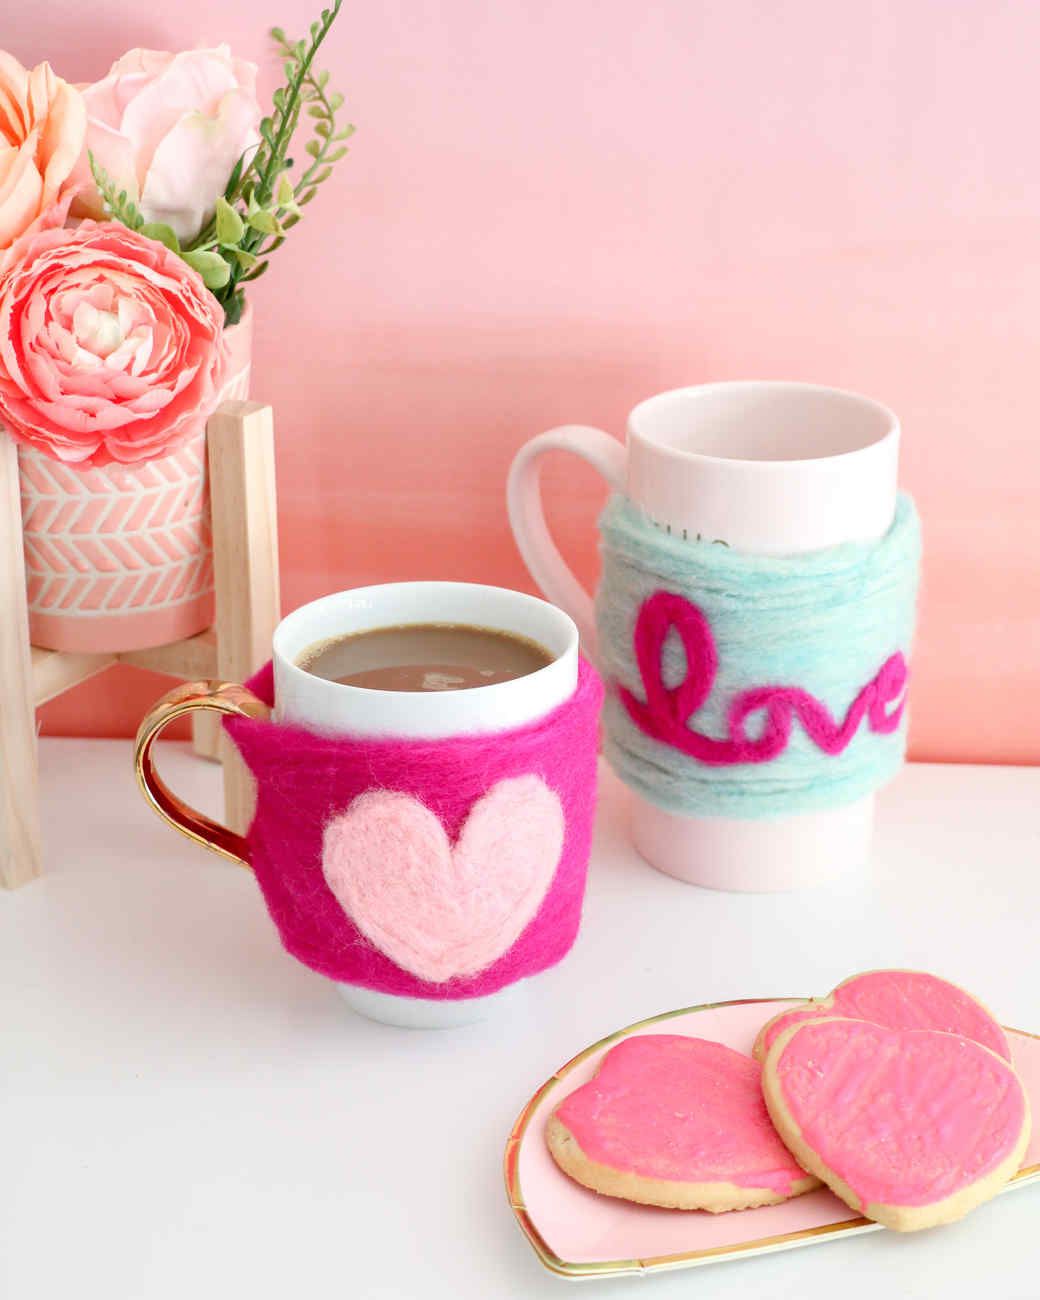 felted heart mug